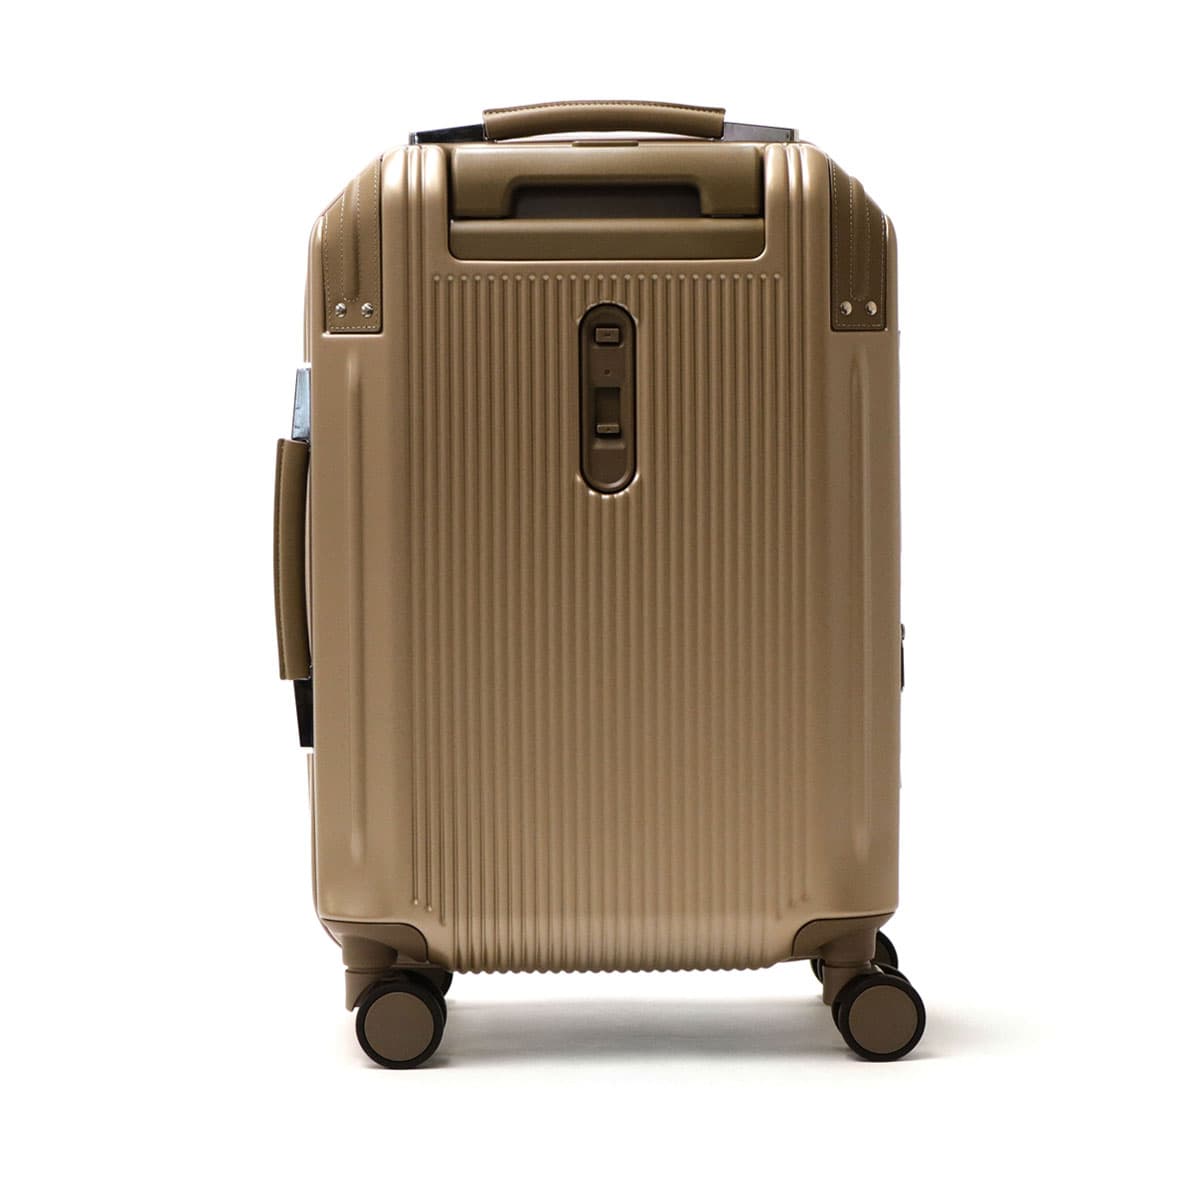 ワイズリー スーツケース 超軽量 ショック吸収・ストッパー機能双輪